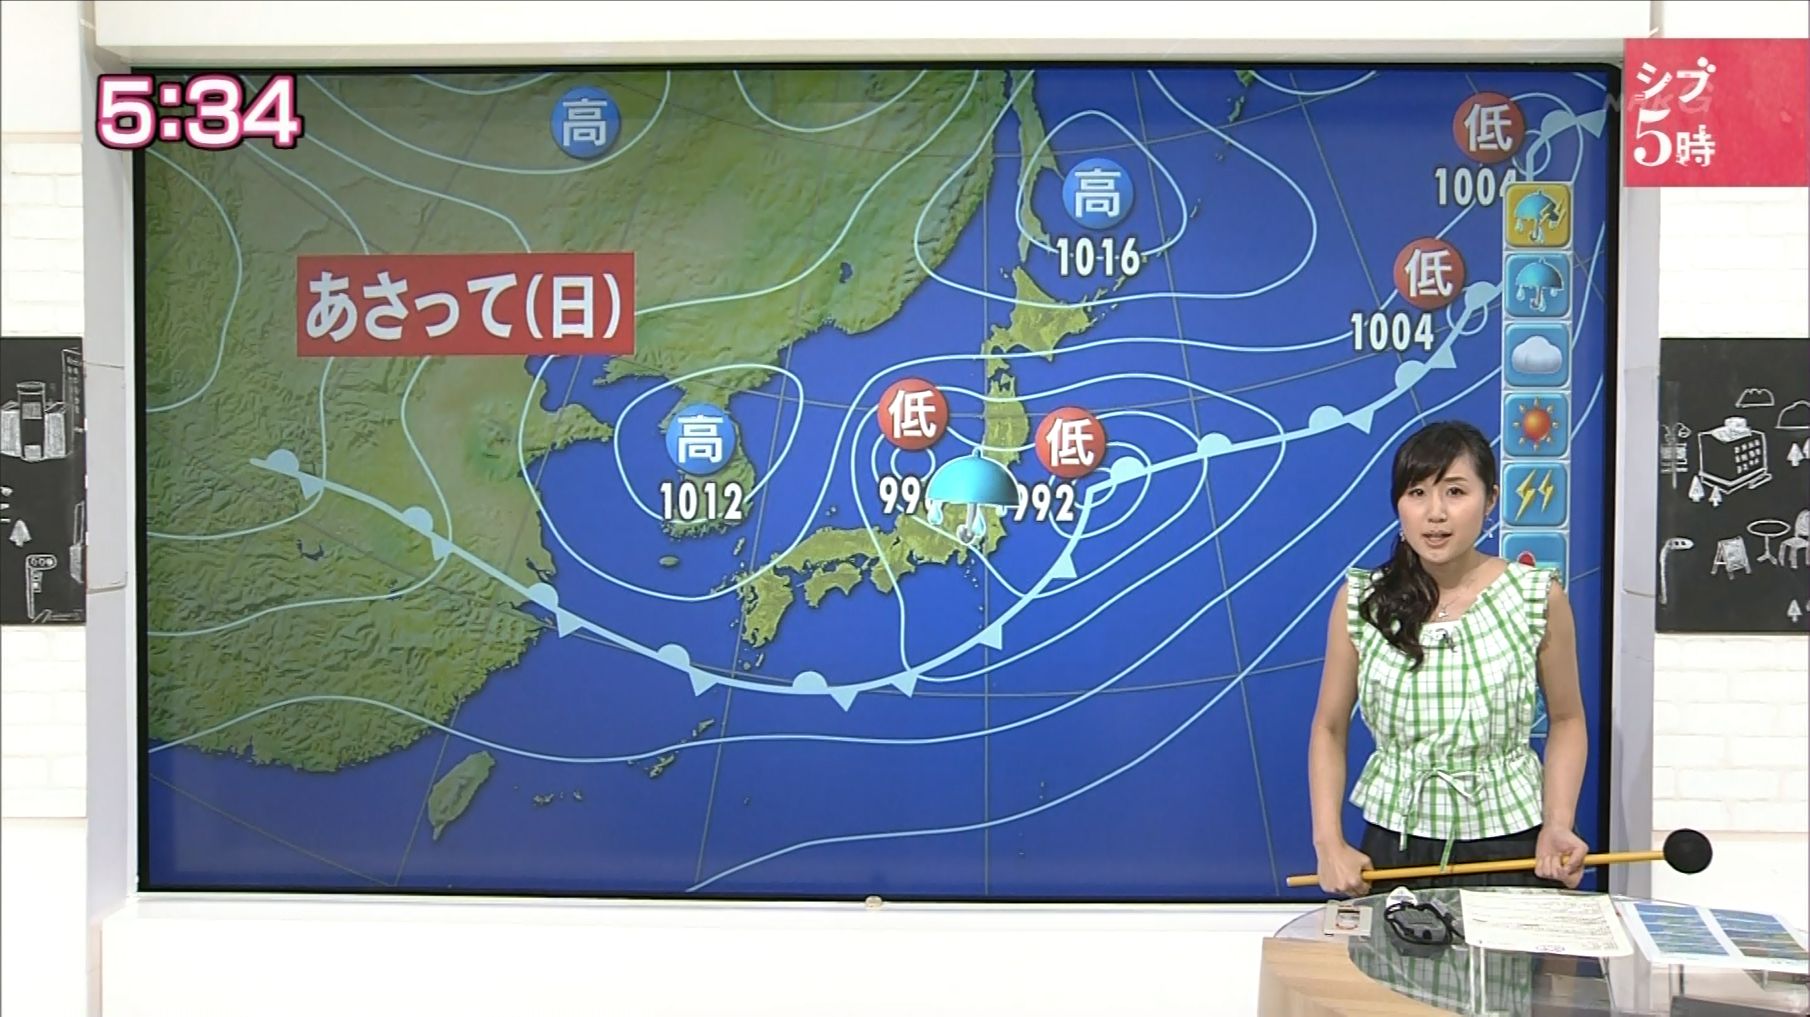 【気象予報士】平野有海Part6【ニュース7】 YouTube動画>1本 ->画像>841枚 